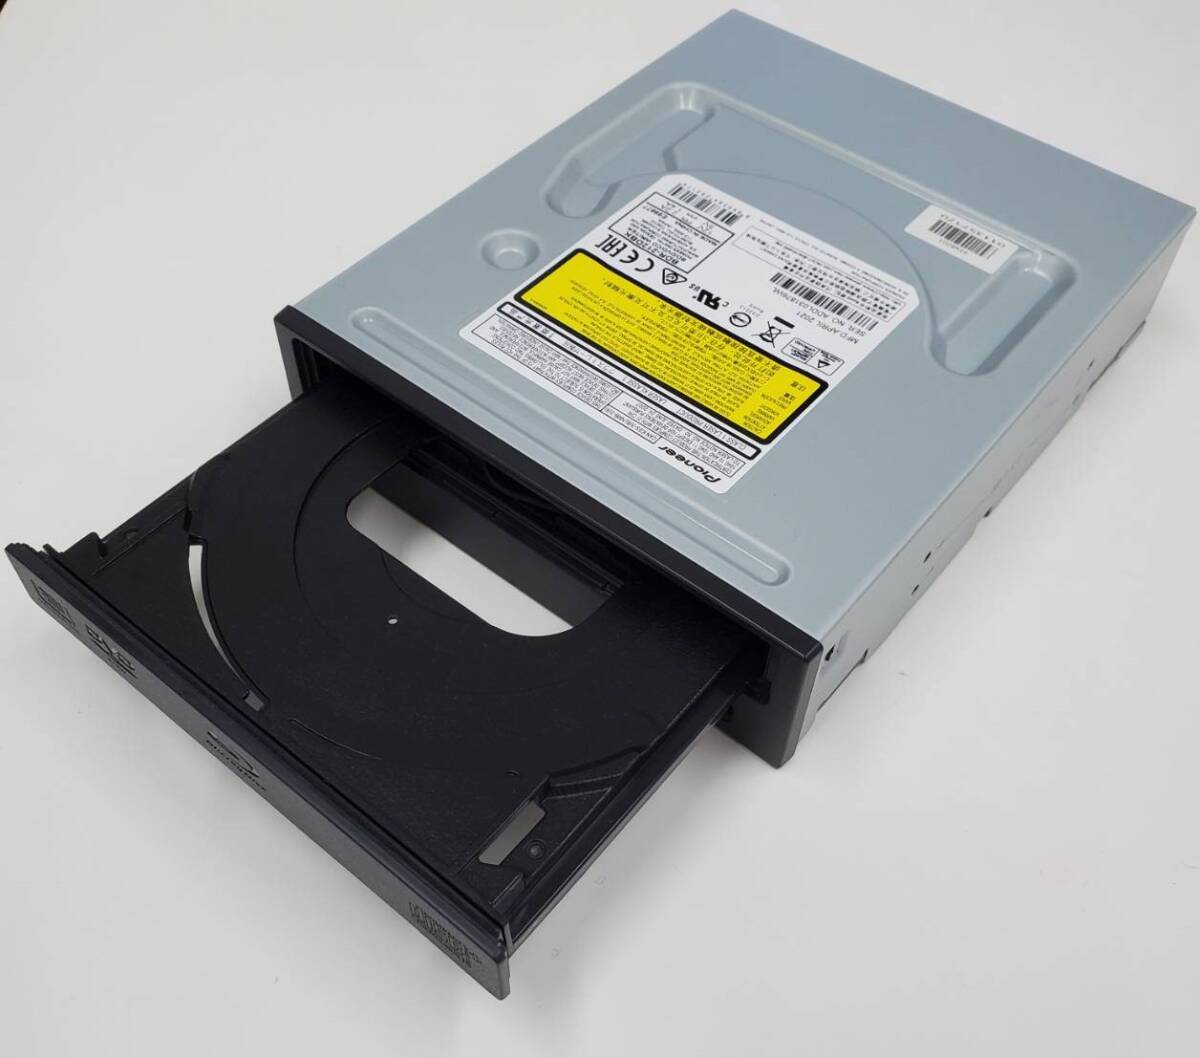 パイオニア 2021年4月製造 BDR-212 ブルーレイドライブ SATA デスクトップ 5インチ Pioneer Blu-ray DVDの画像2